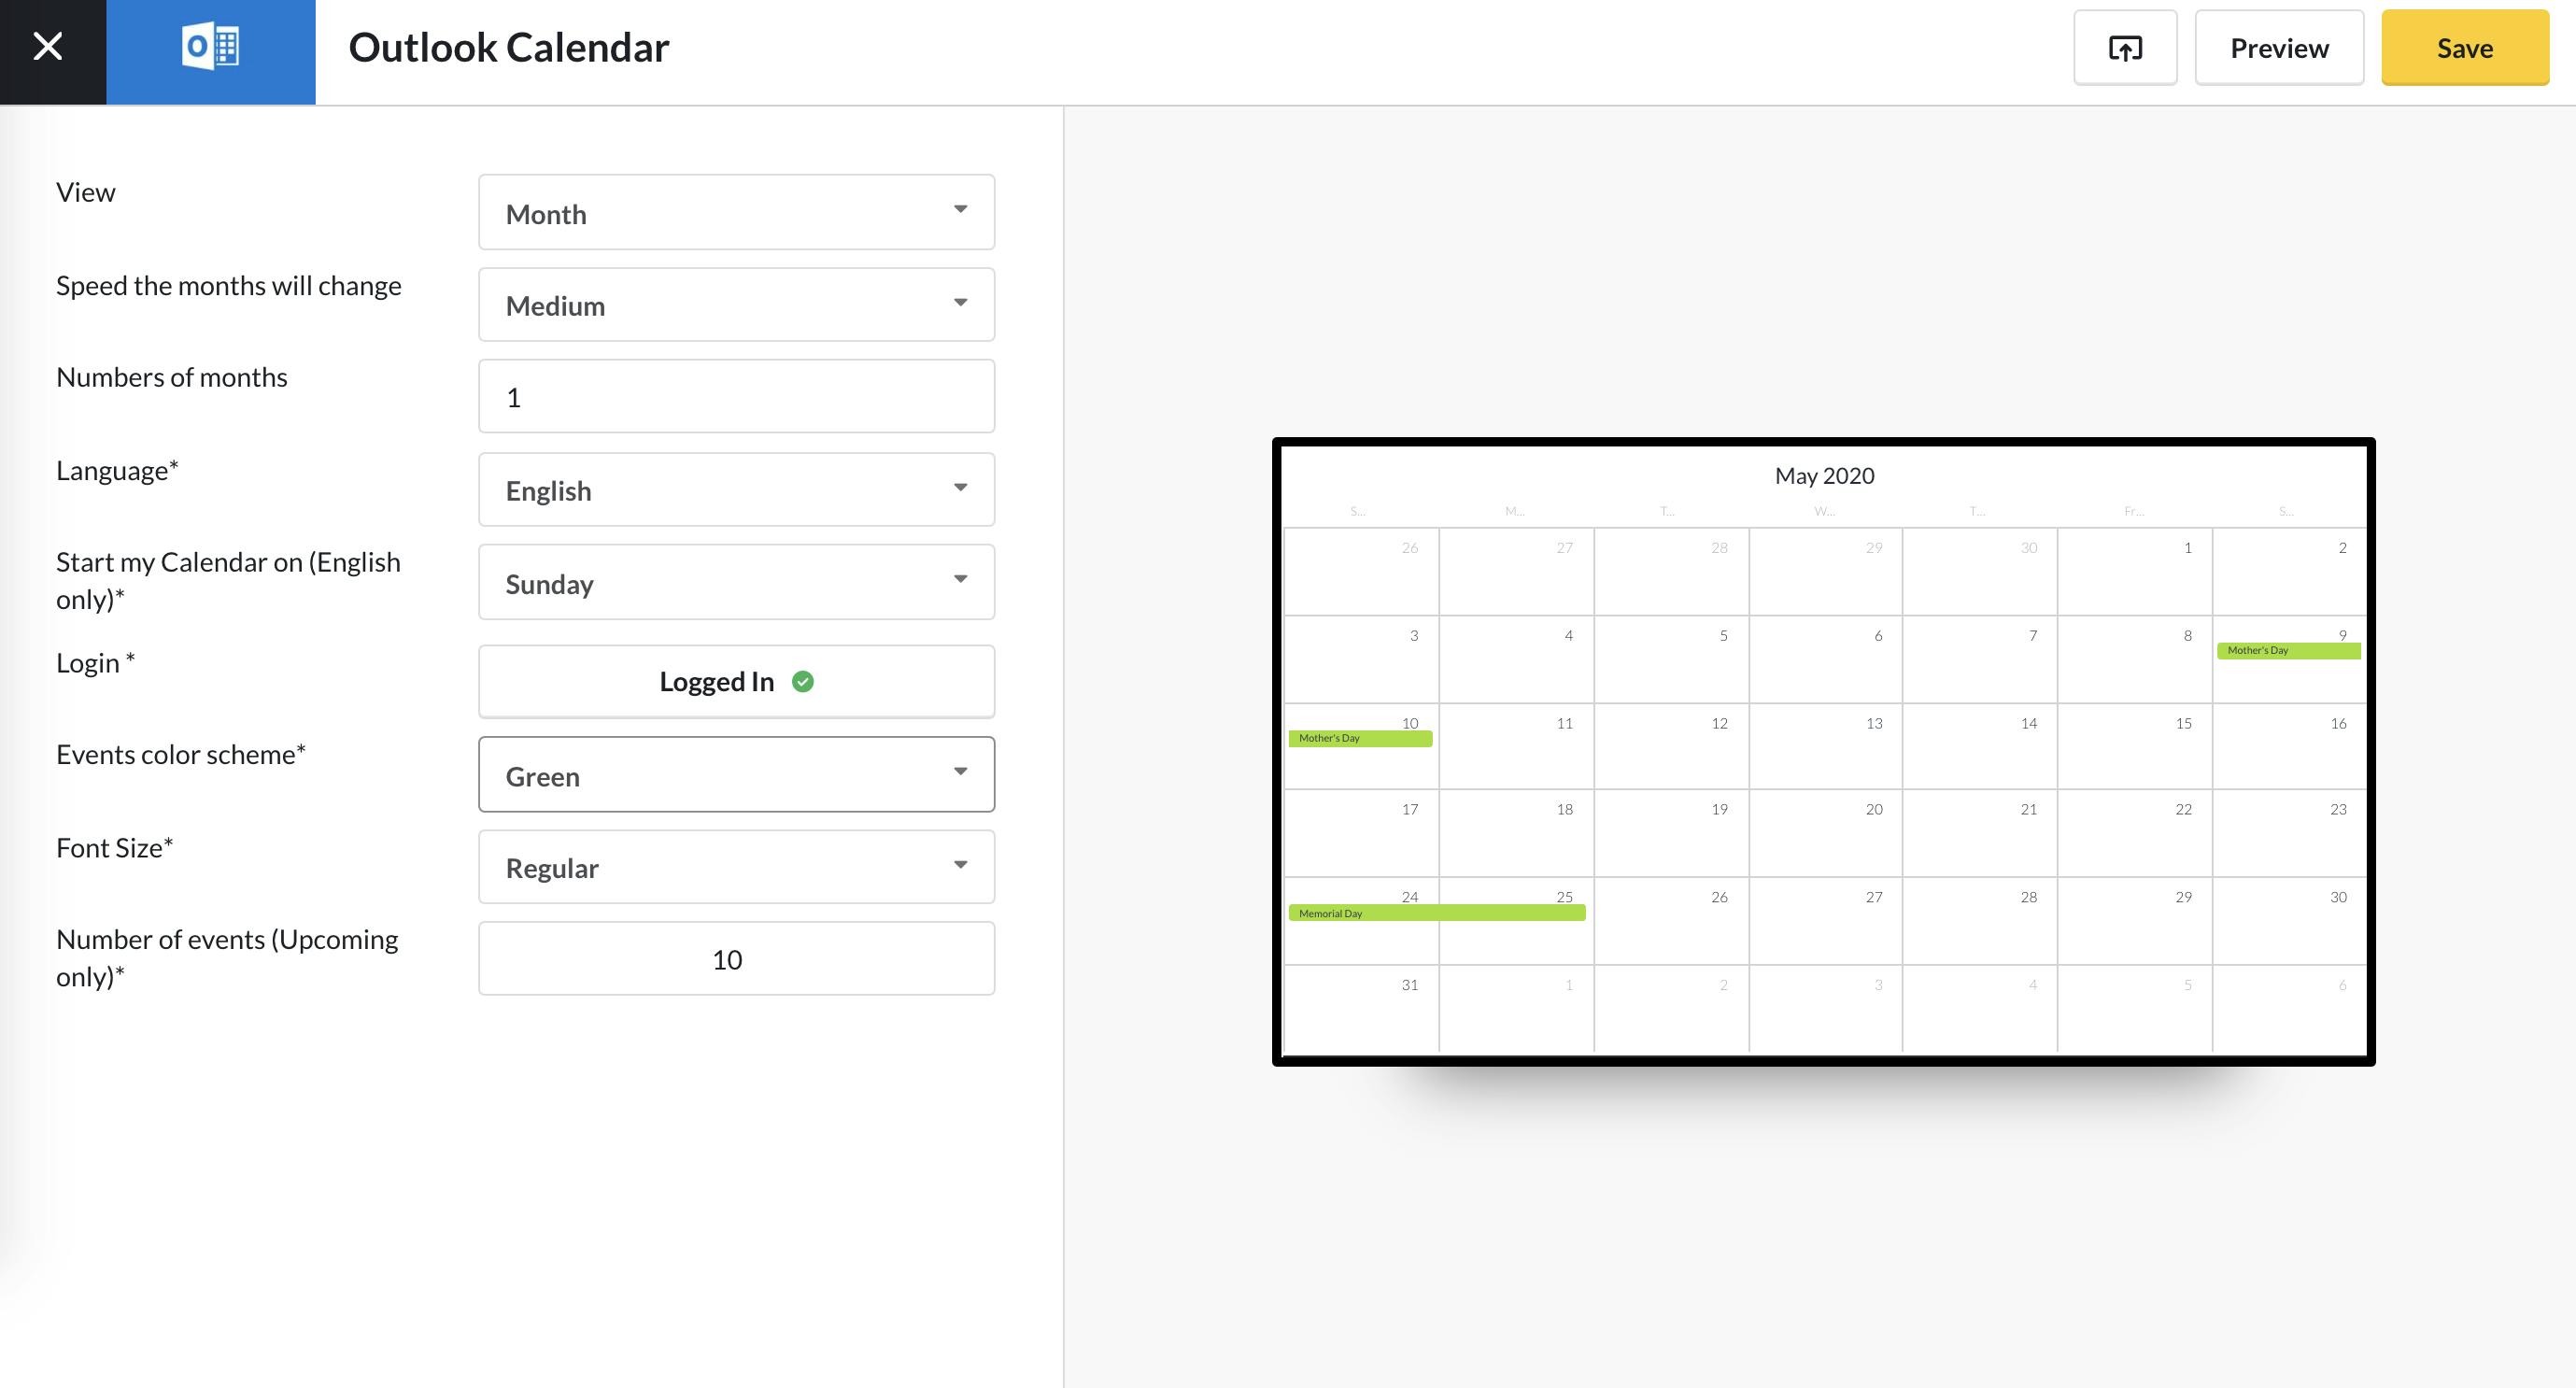 Outlook Calendar app guide - event scheme 5.13.2020.png
